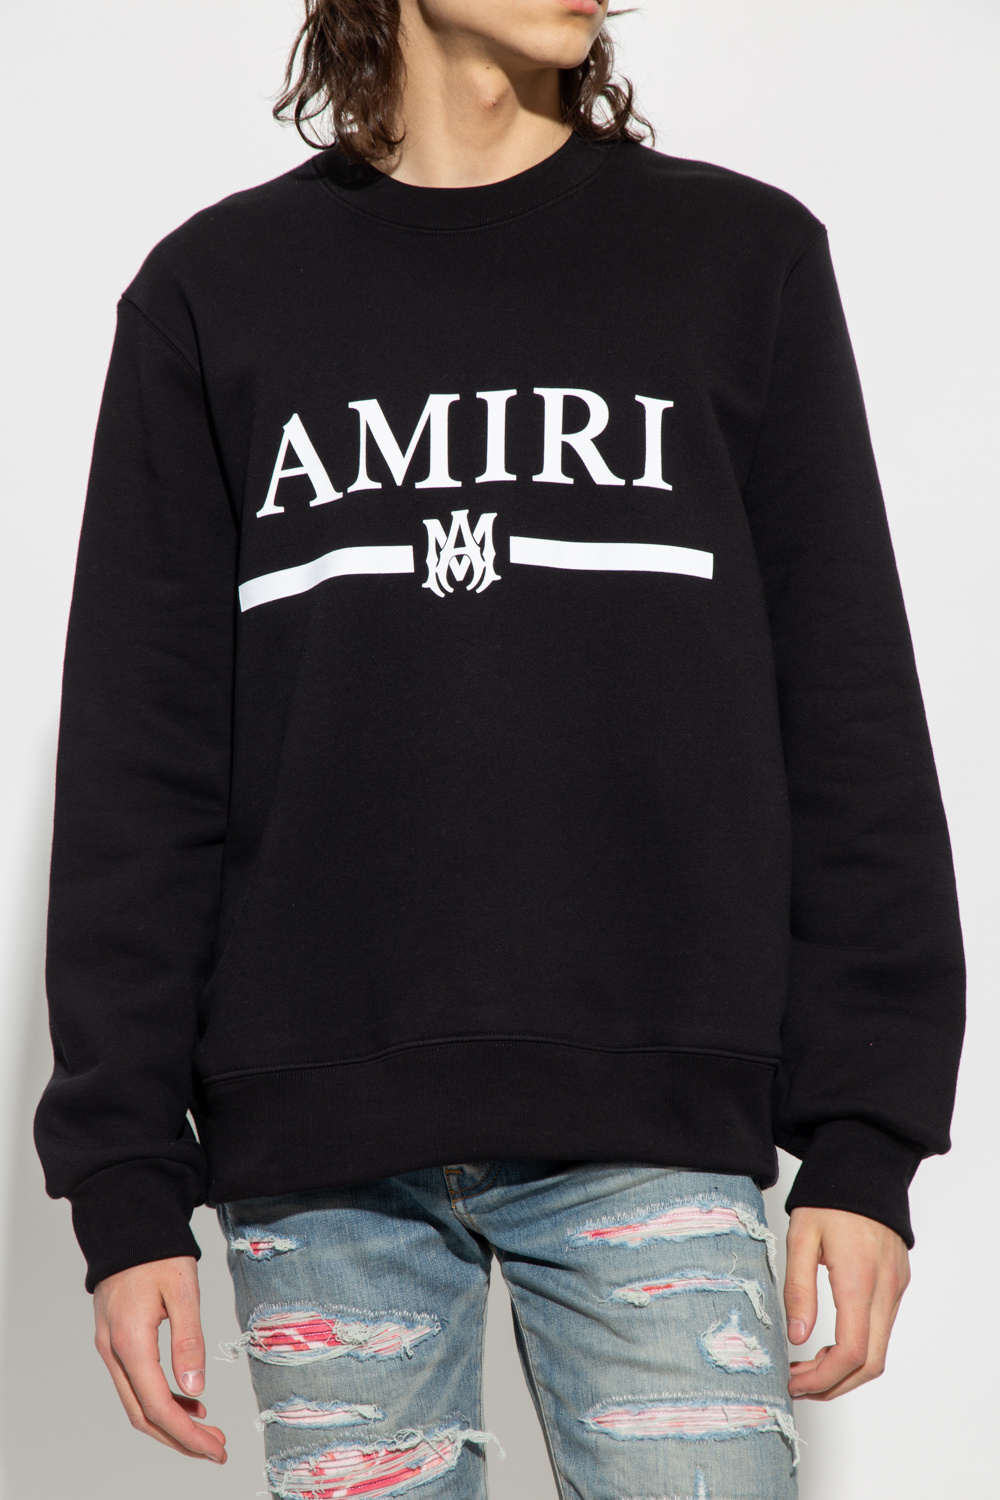 Amiri heron preston knitted hoodie